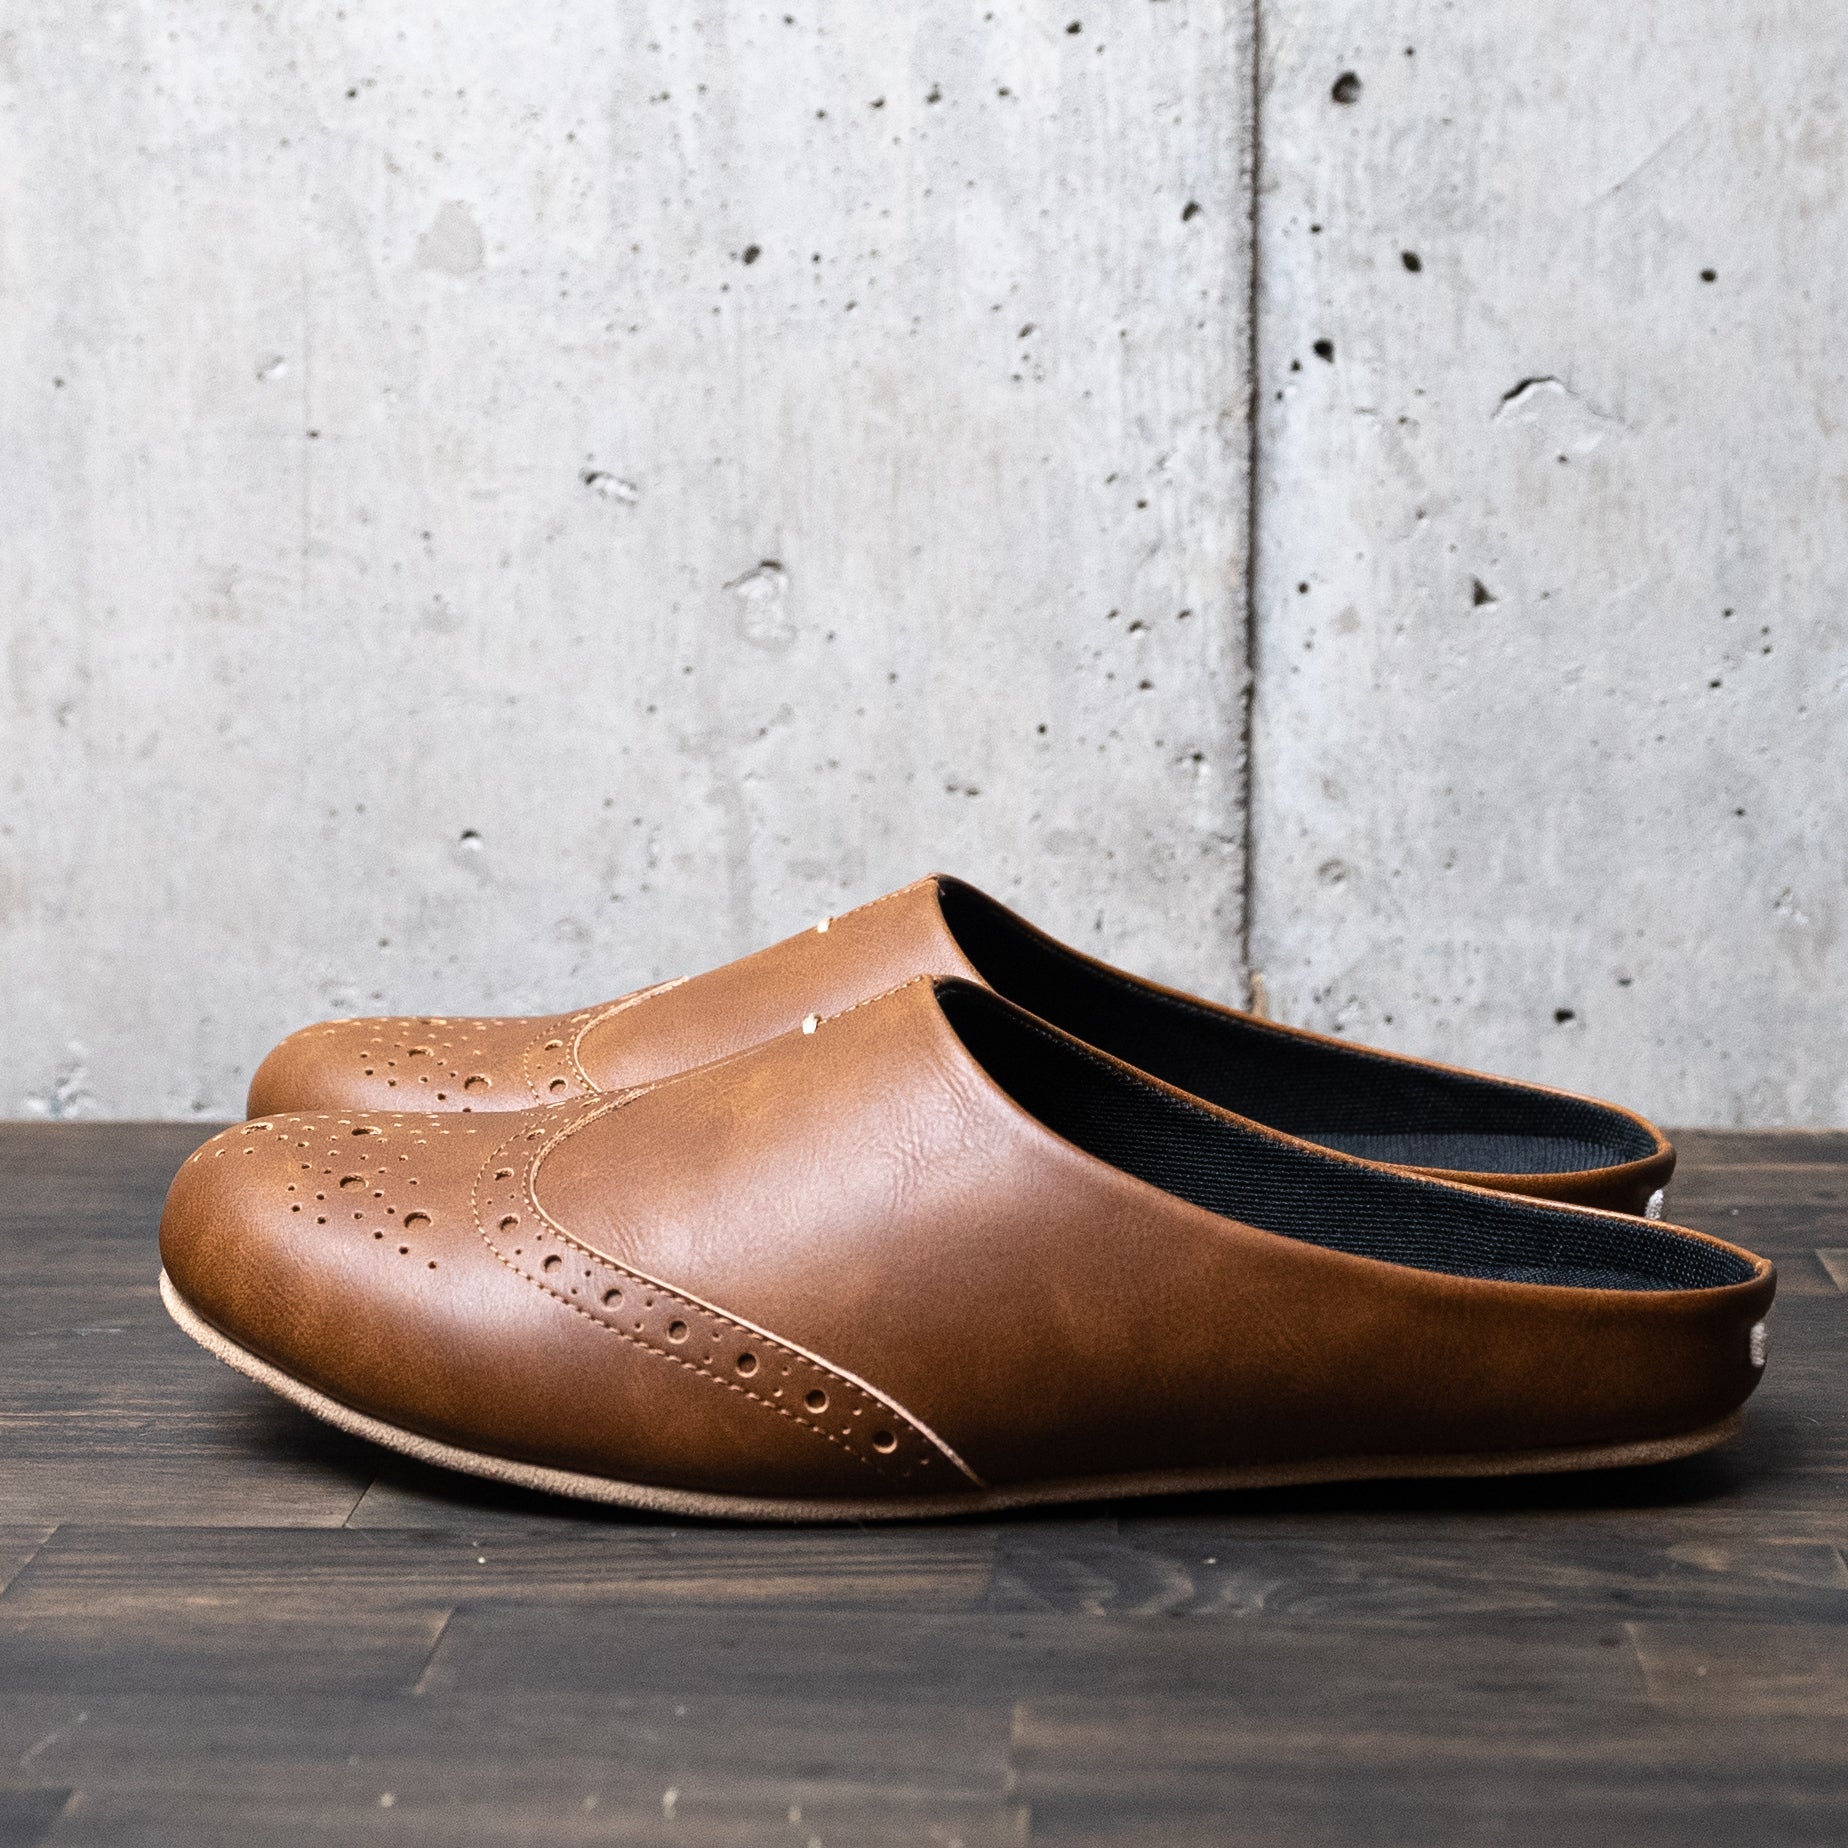 安さの秘密 kinema wing tip leather sandals メンズ | luftechnik.com